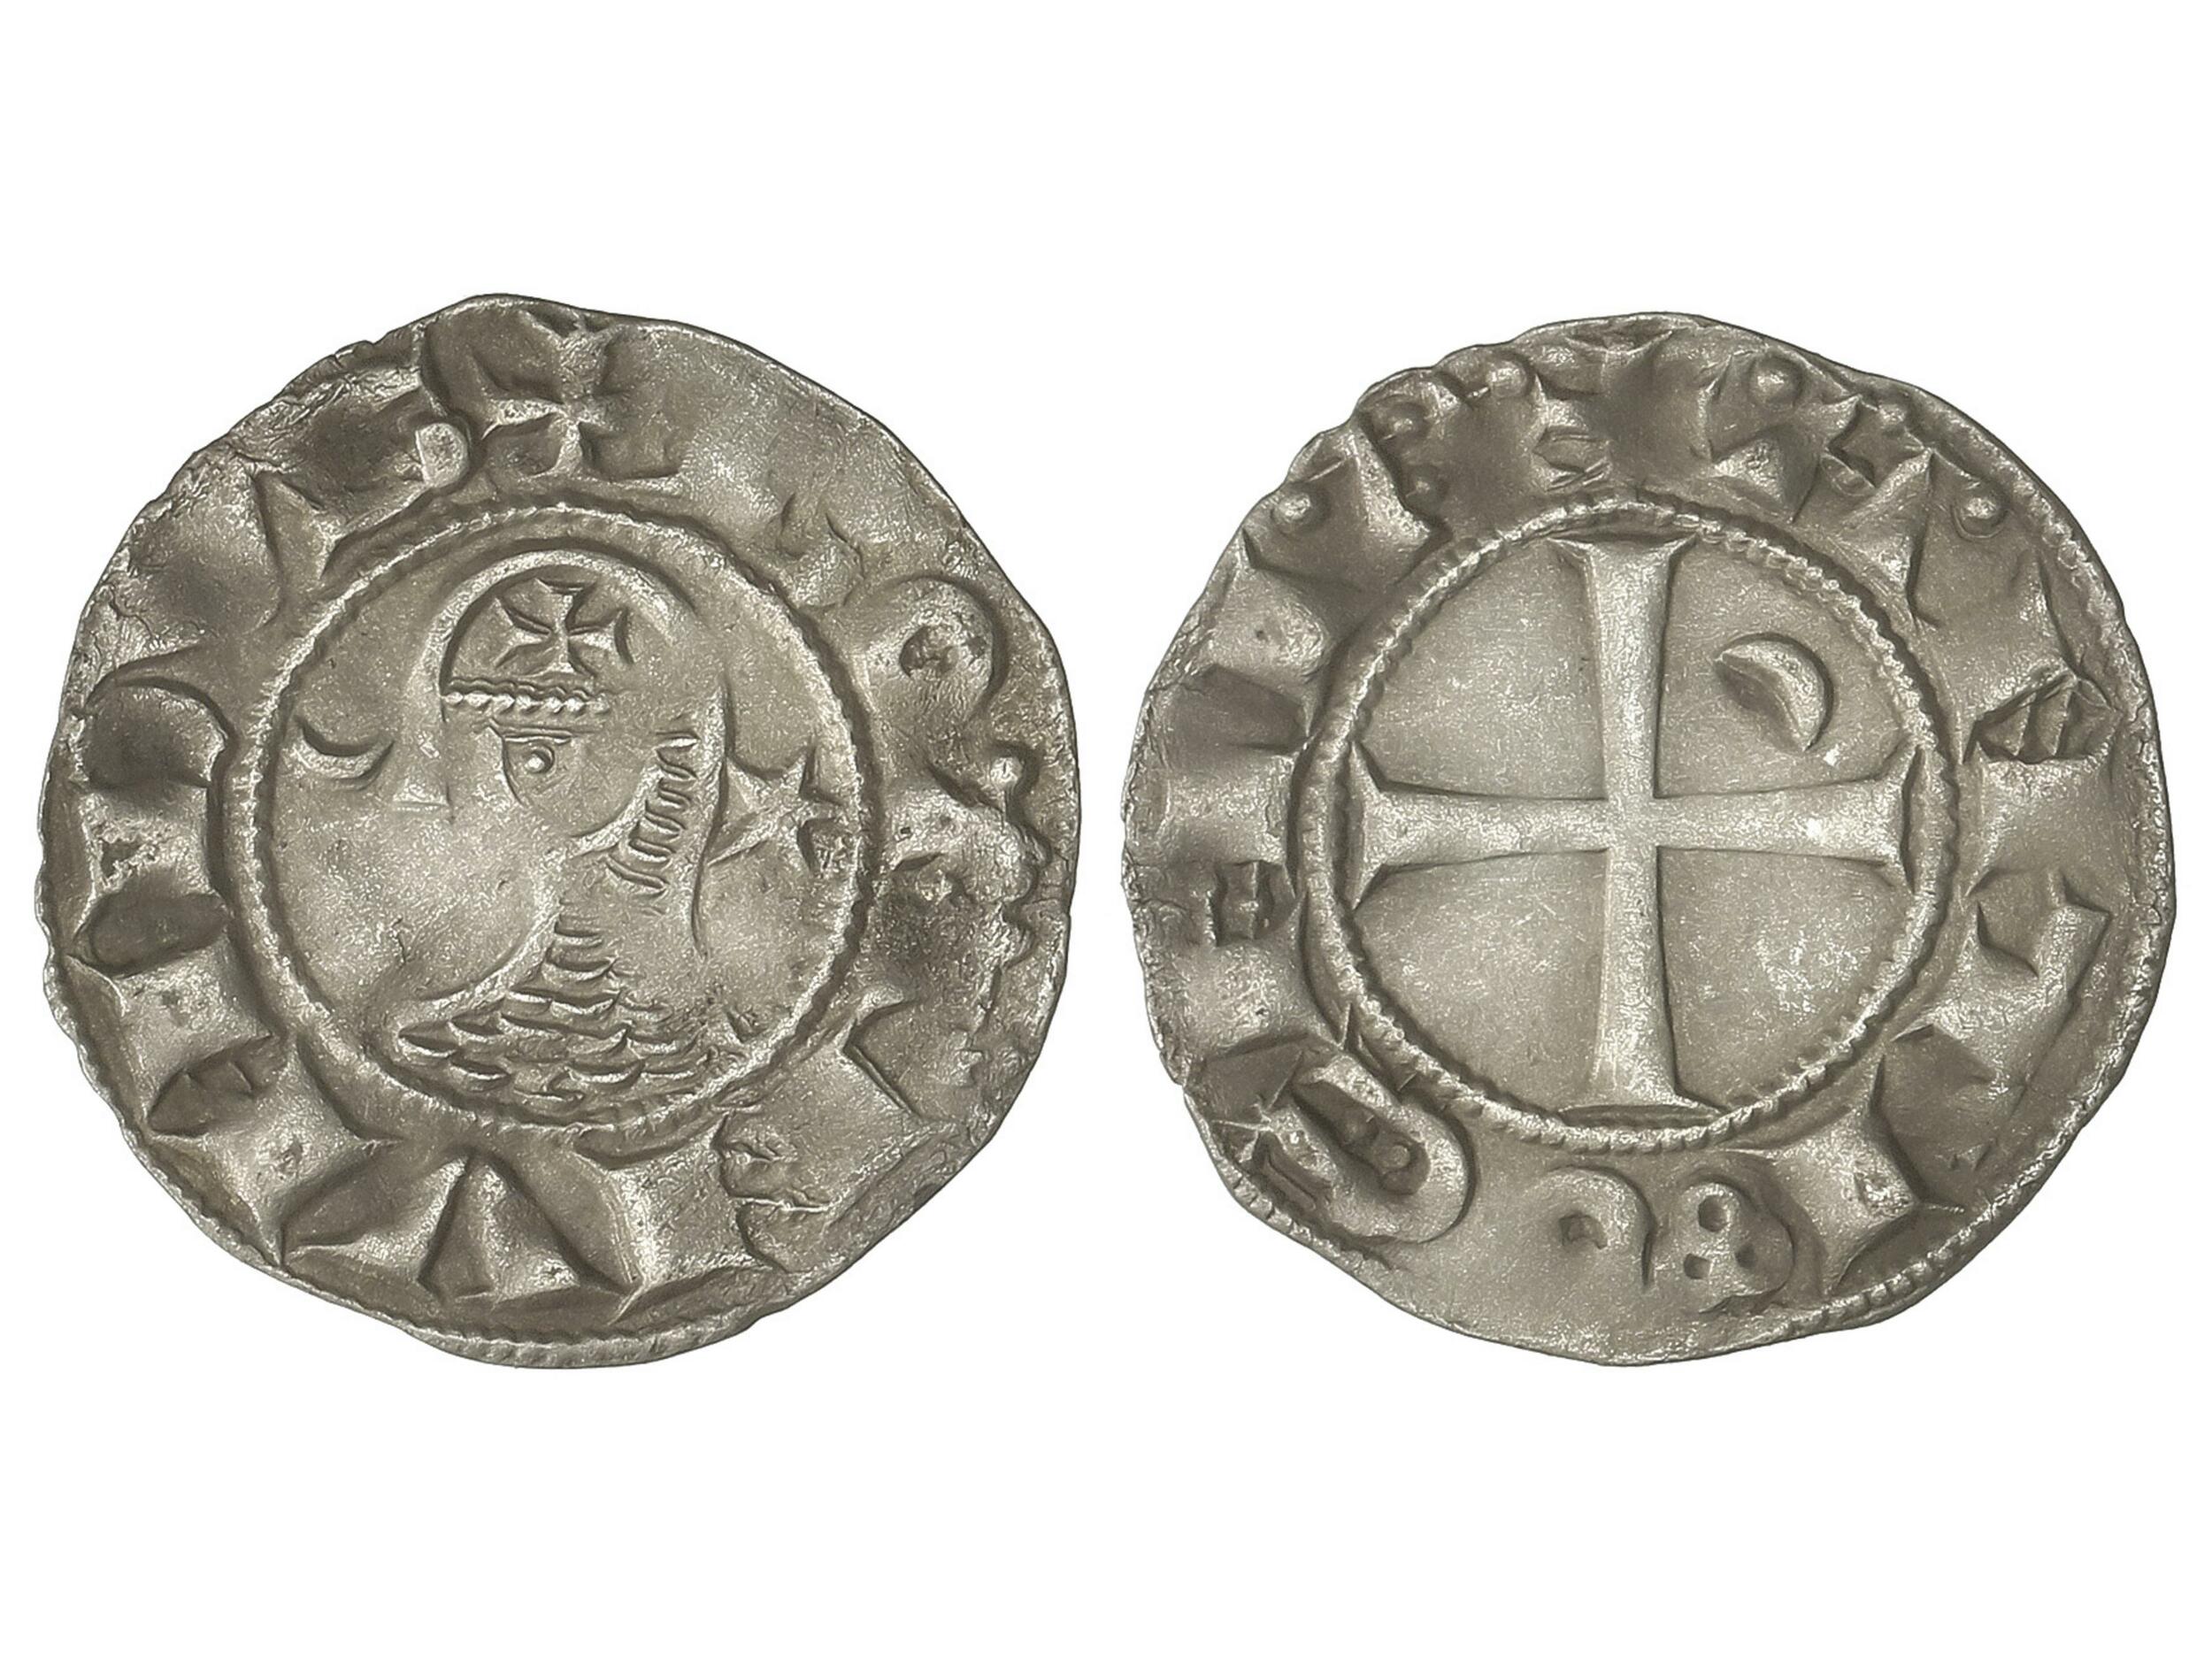 30.180: Islamic Coins - Crusader Imitations